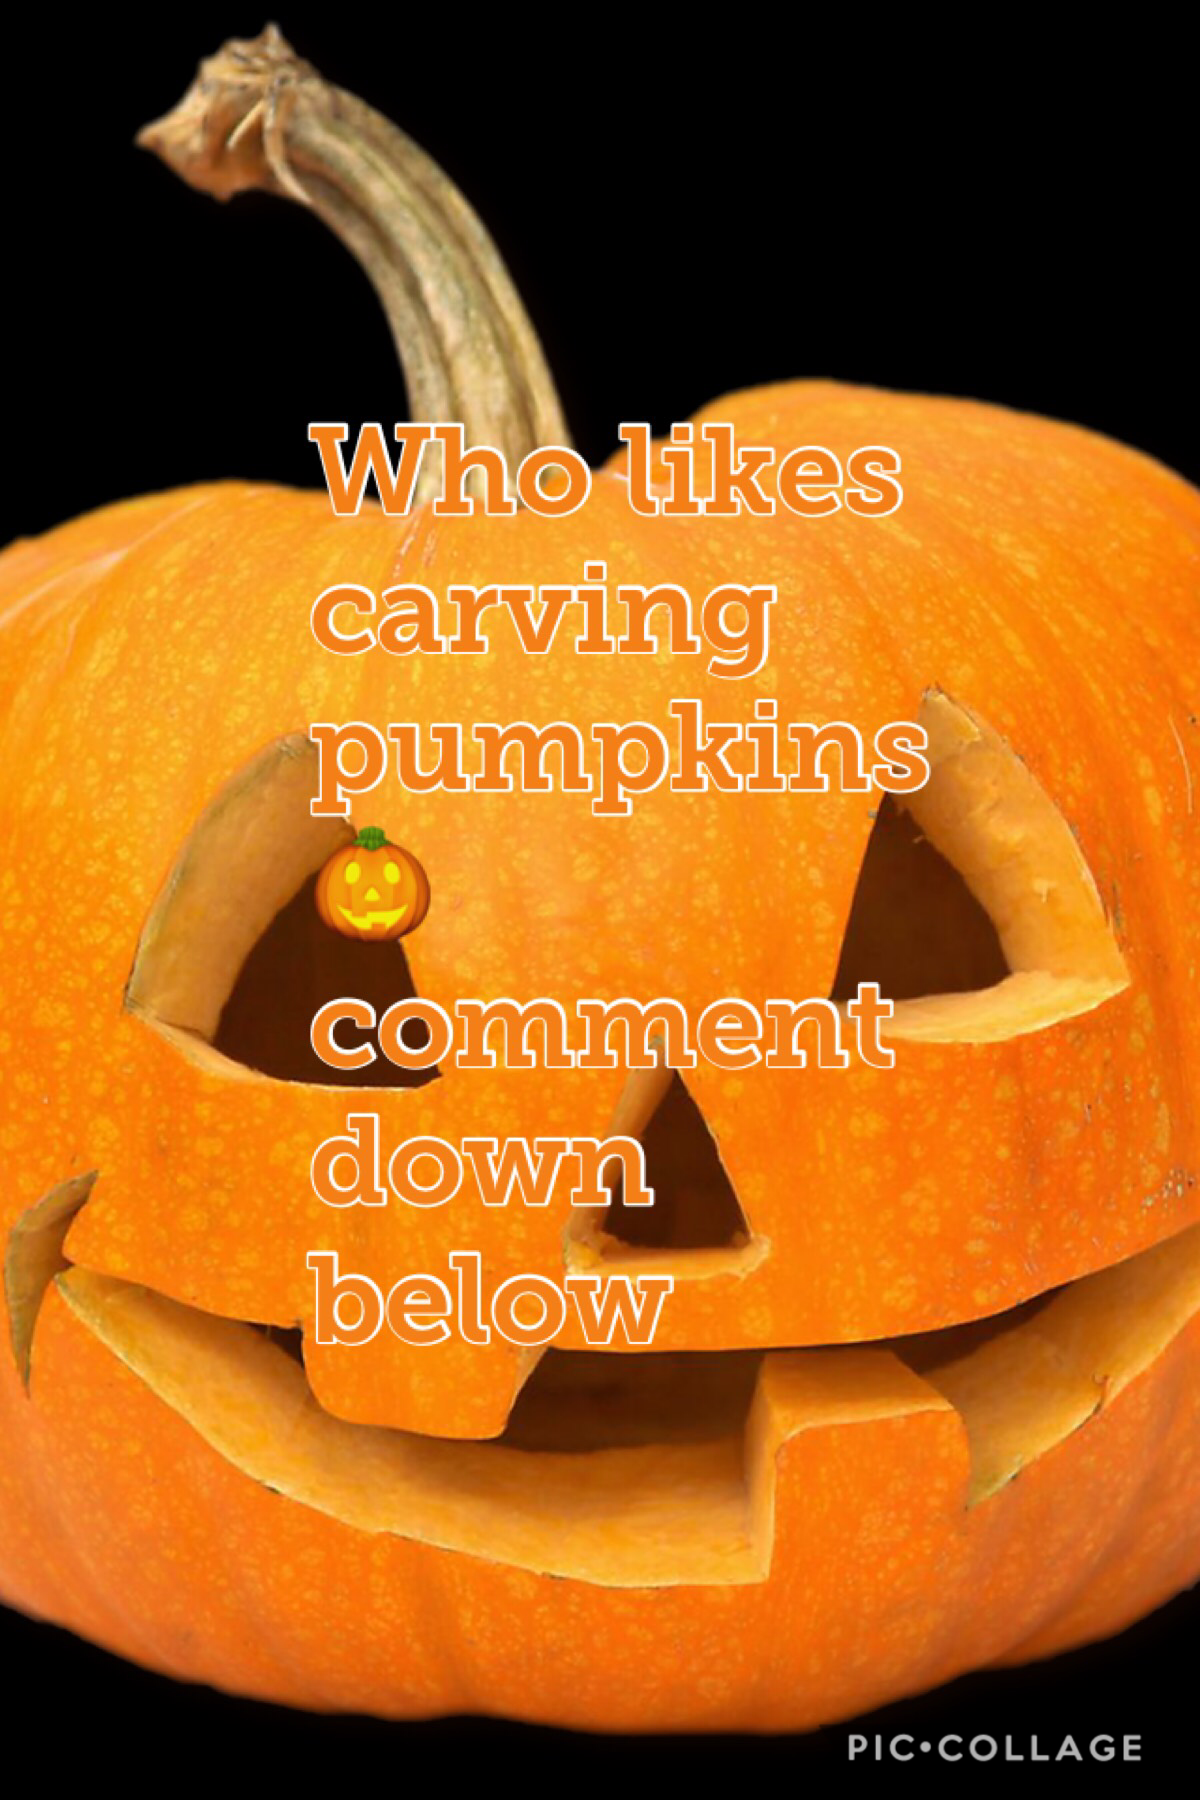 I 💕 carving pumpkins 🎃 